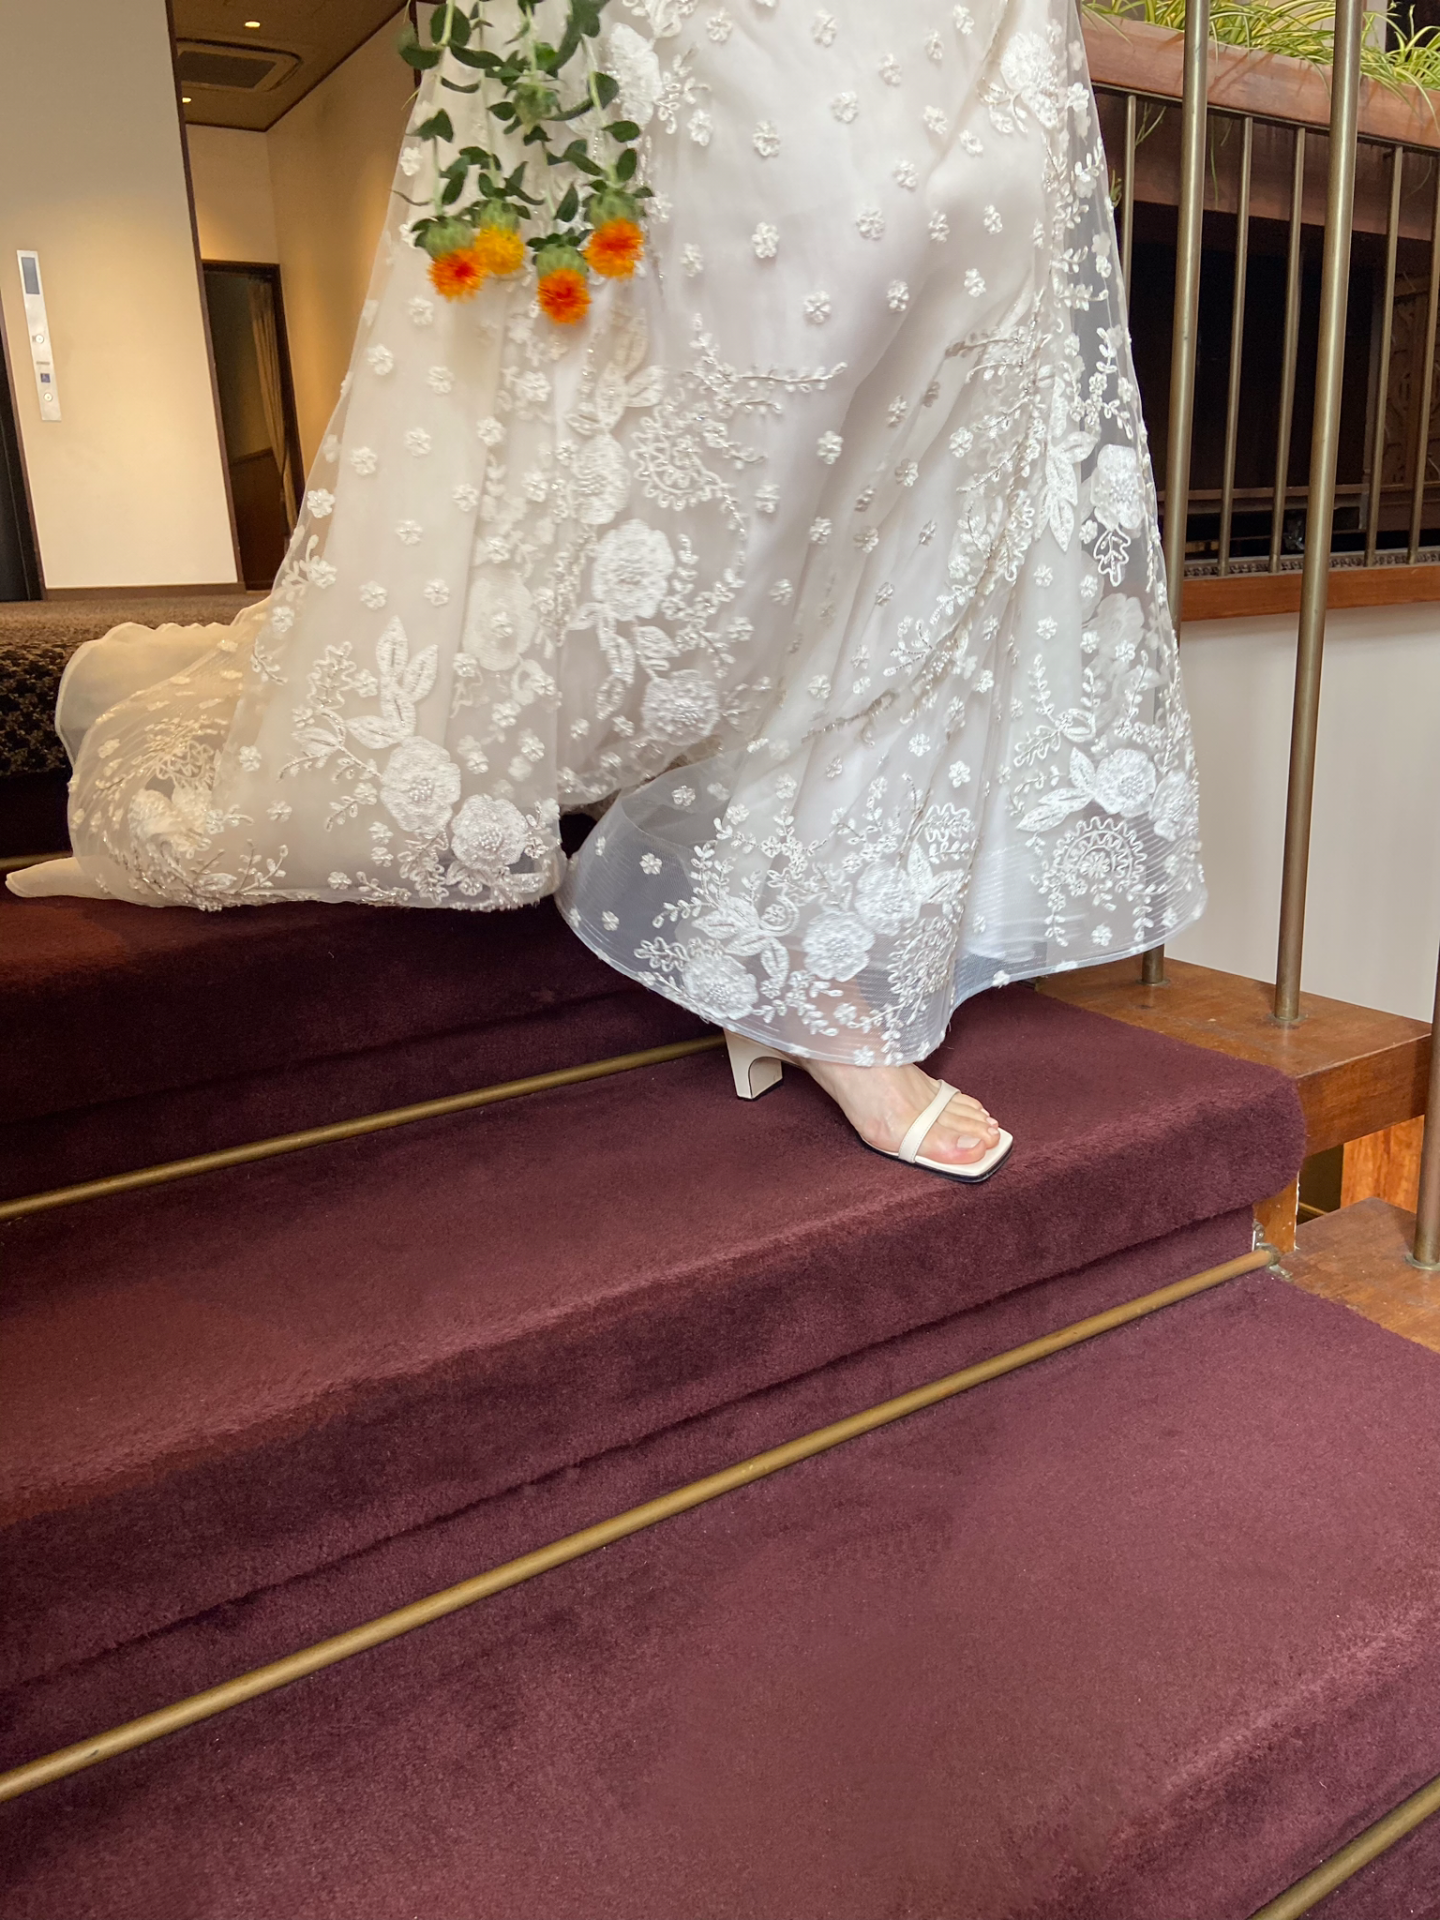 ナイーム・カーンの総刺繍のAラインドレスに、真っ白のサンダルを合わせラフなパーティースタイルでご入場